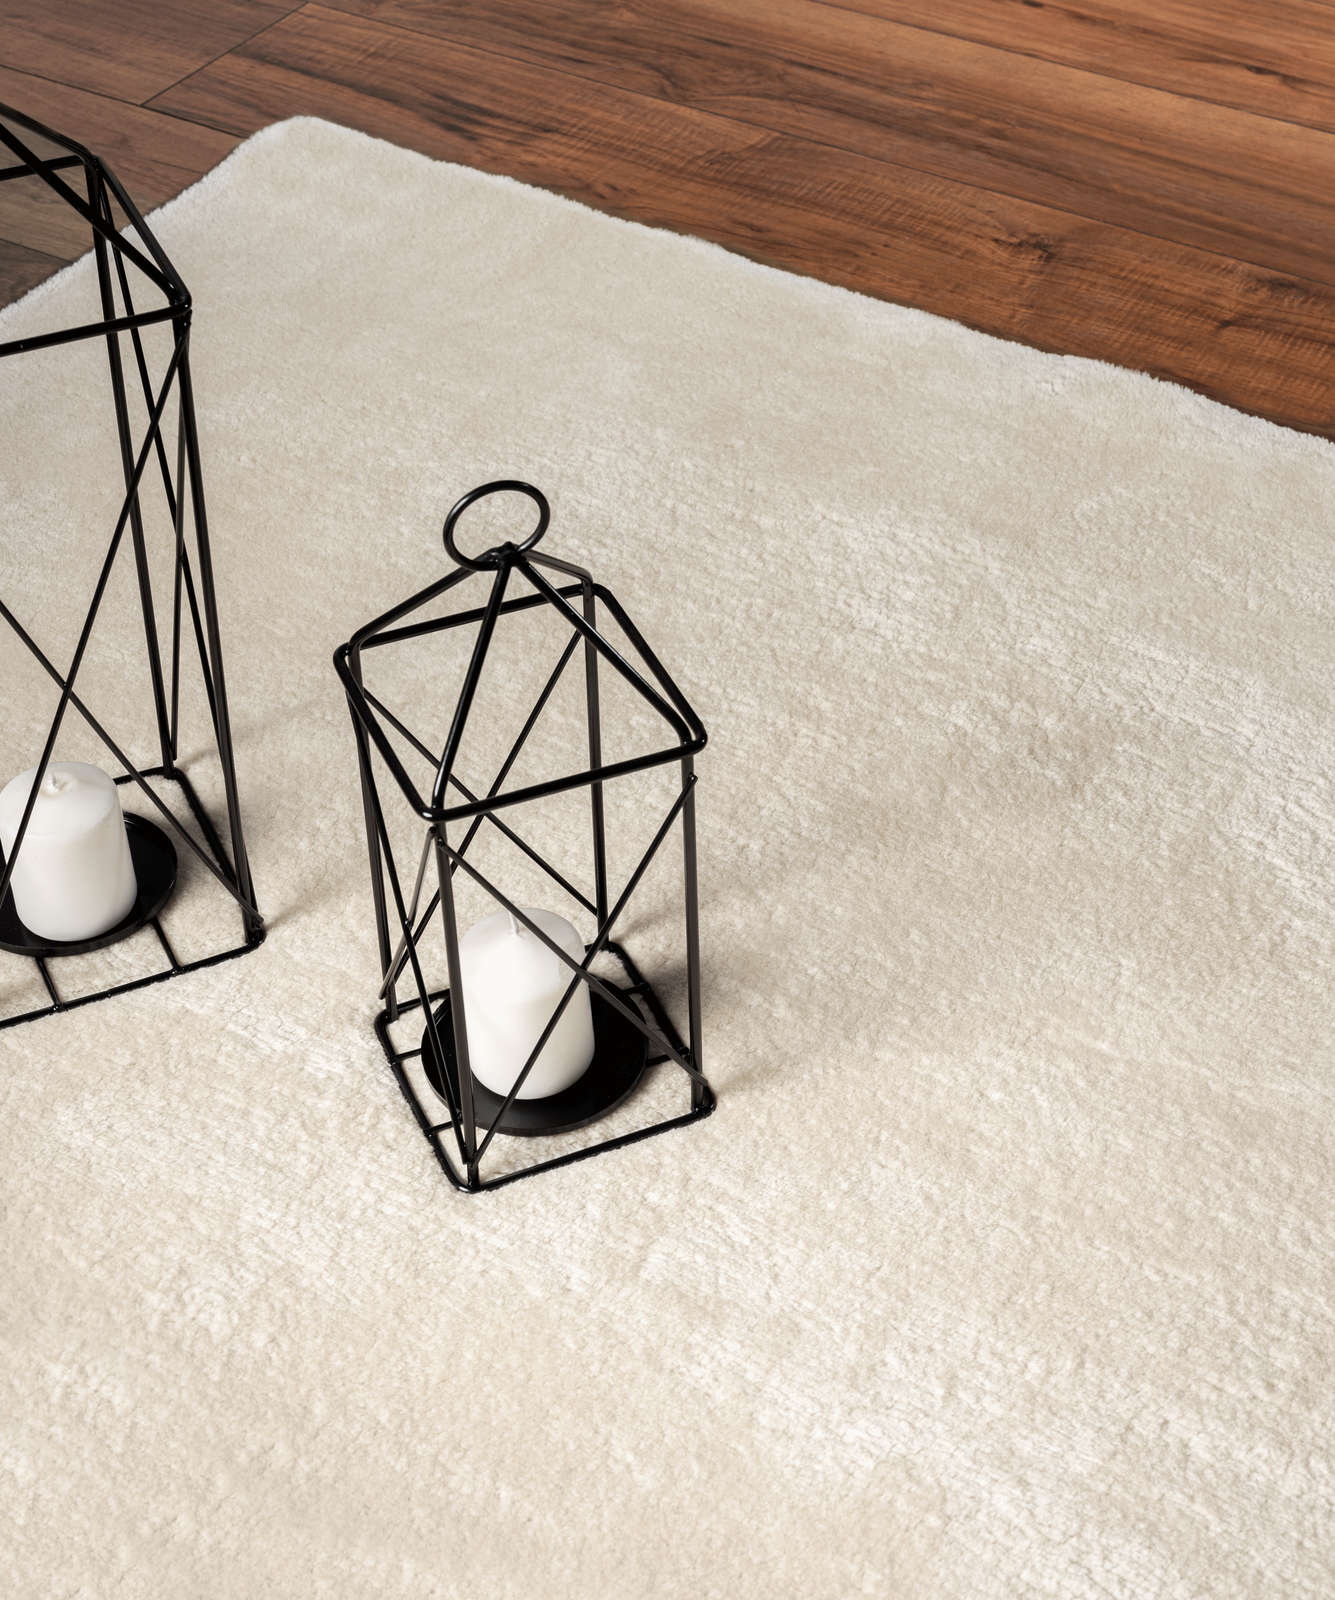             Soft high pile carpet in beige - 290 x 200 cm
        